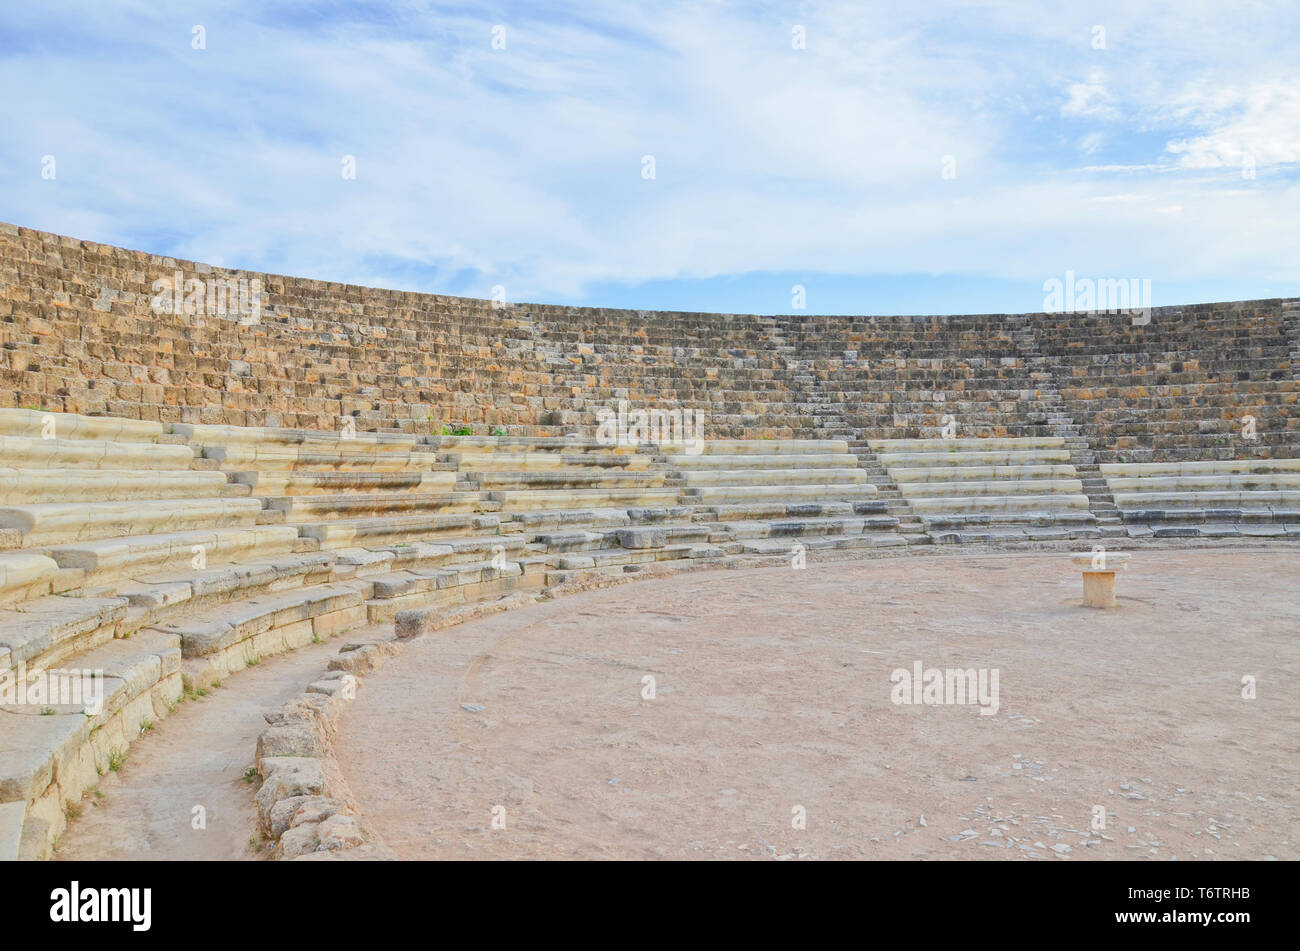 Ruines du théâtre antique de Salamine chypriote turque, Chypre du Nord. Salamine était le grec ancien cité-état. Attraction touristique populaire et l'un des plus importants dans le pays. Banque D'Images